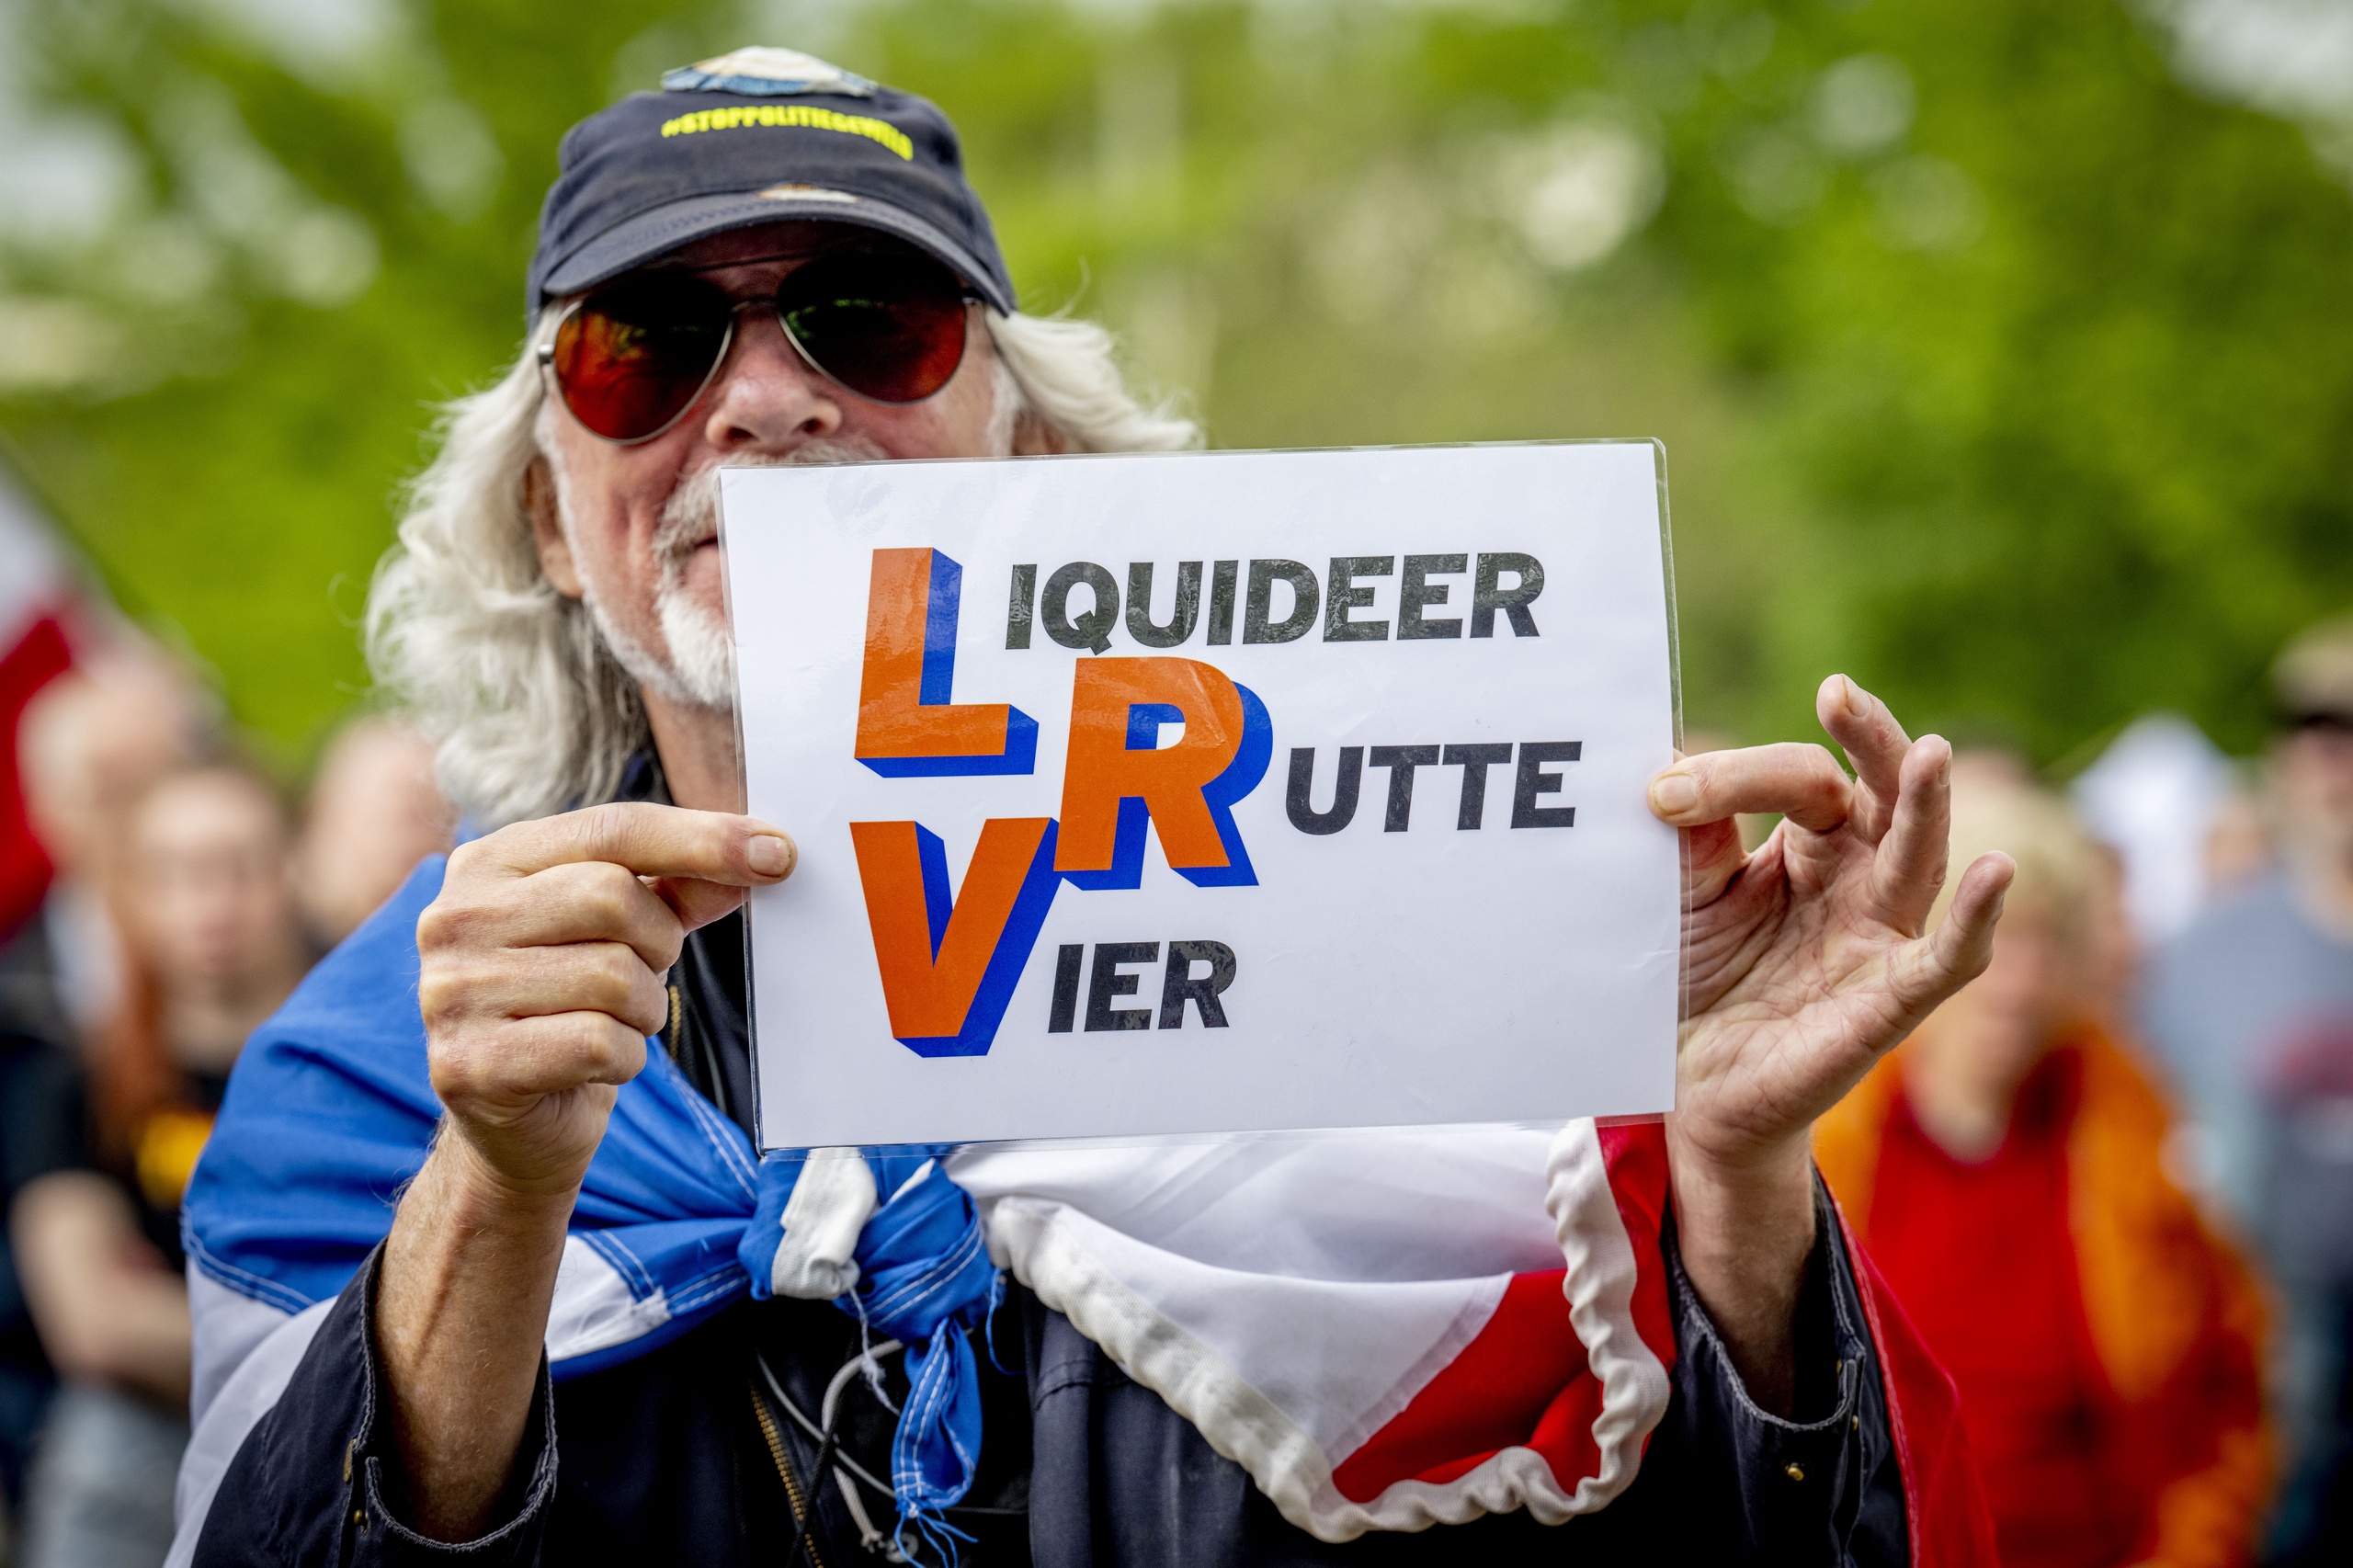 Leden van de vrijheidsbeweging Samen voor Nederland demonstreren op de Koekamp. Volgens de demonstranten moet Mark Rutte opstappen als premier en mag aspirant-omroep Ongehoord Nederland (ON!) niet uit het publieke bestel worden gezet. 